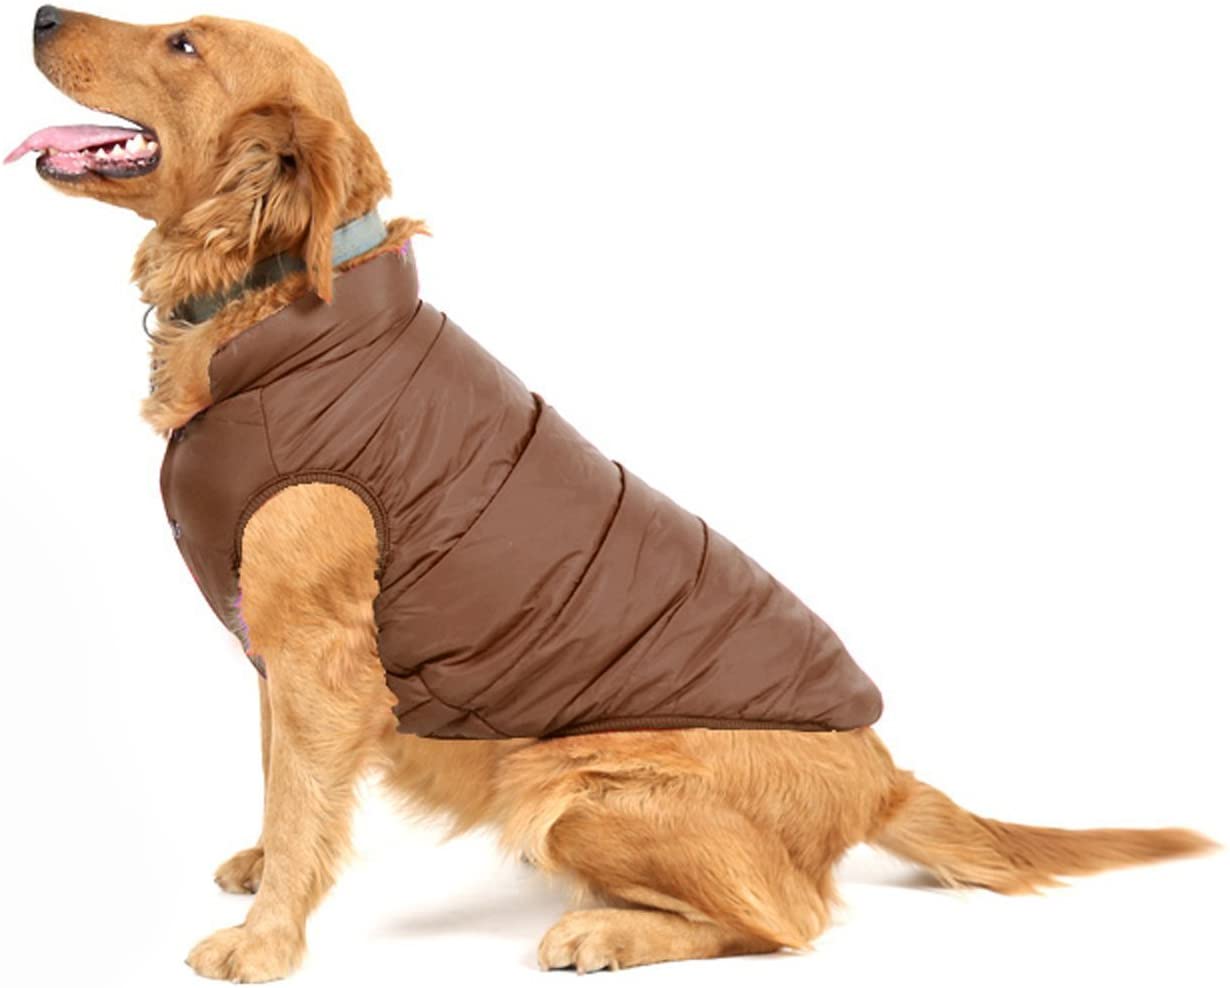  Tineer Abrigo de Invierno cálido para Perros, Forro Polar Cómodo frío Chaqueta de Perro Chaleco de Perrito Ropa de Abrigo Forrado Ropa cálida Acolchada para Perros medianos (S, Brown) 